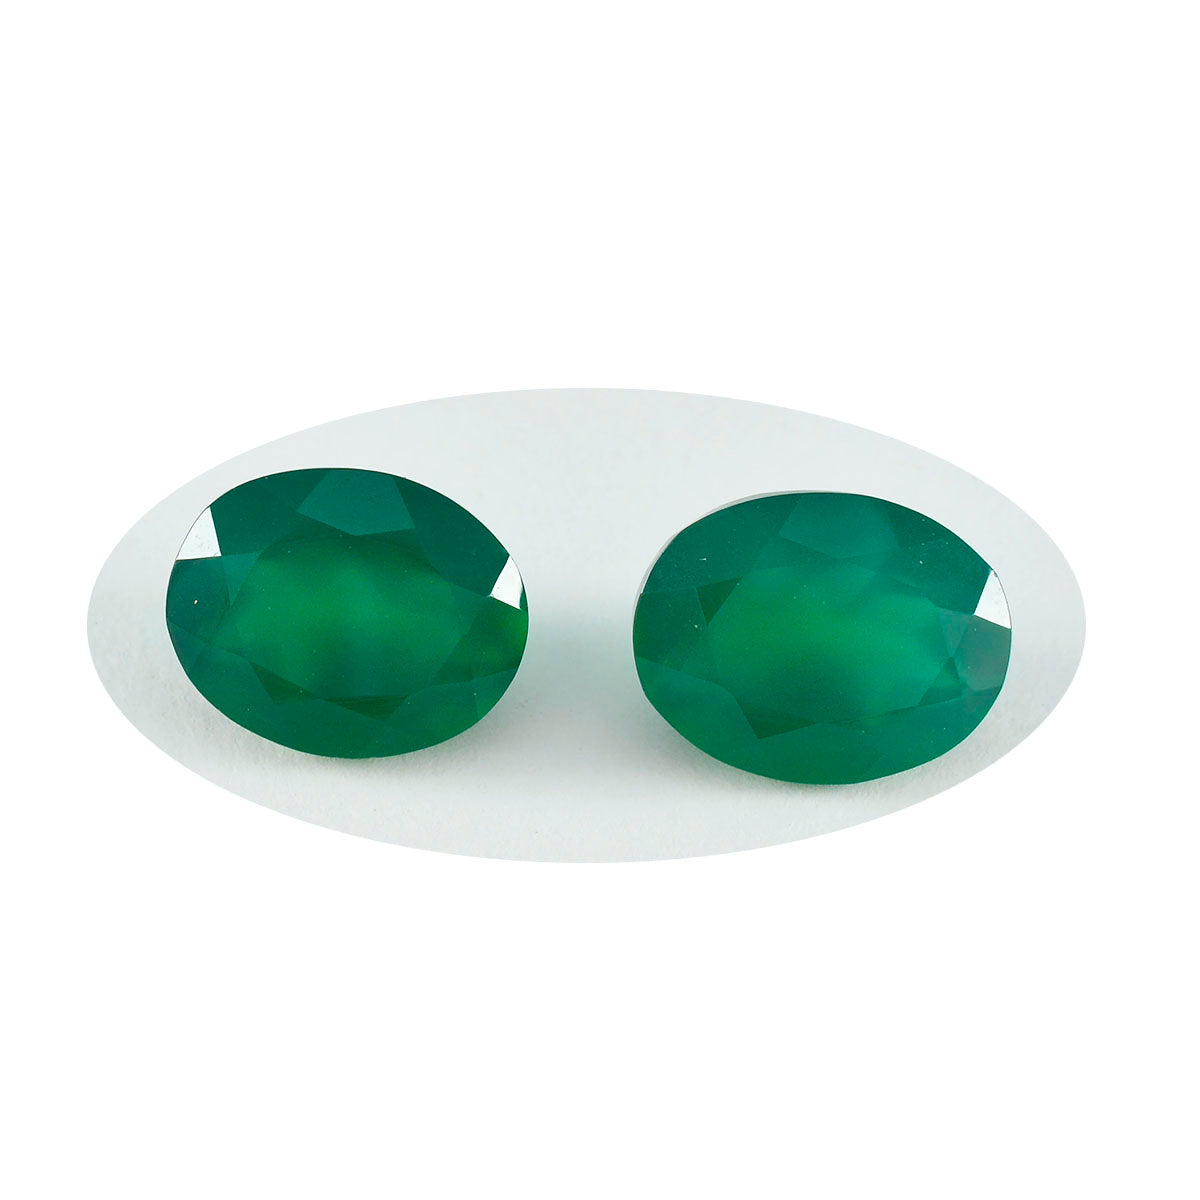 riyogems 1pc 本物のグリーン オニキス ファセット 7x9 mm 楕円形のハンサムな品質の宝石